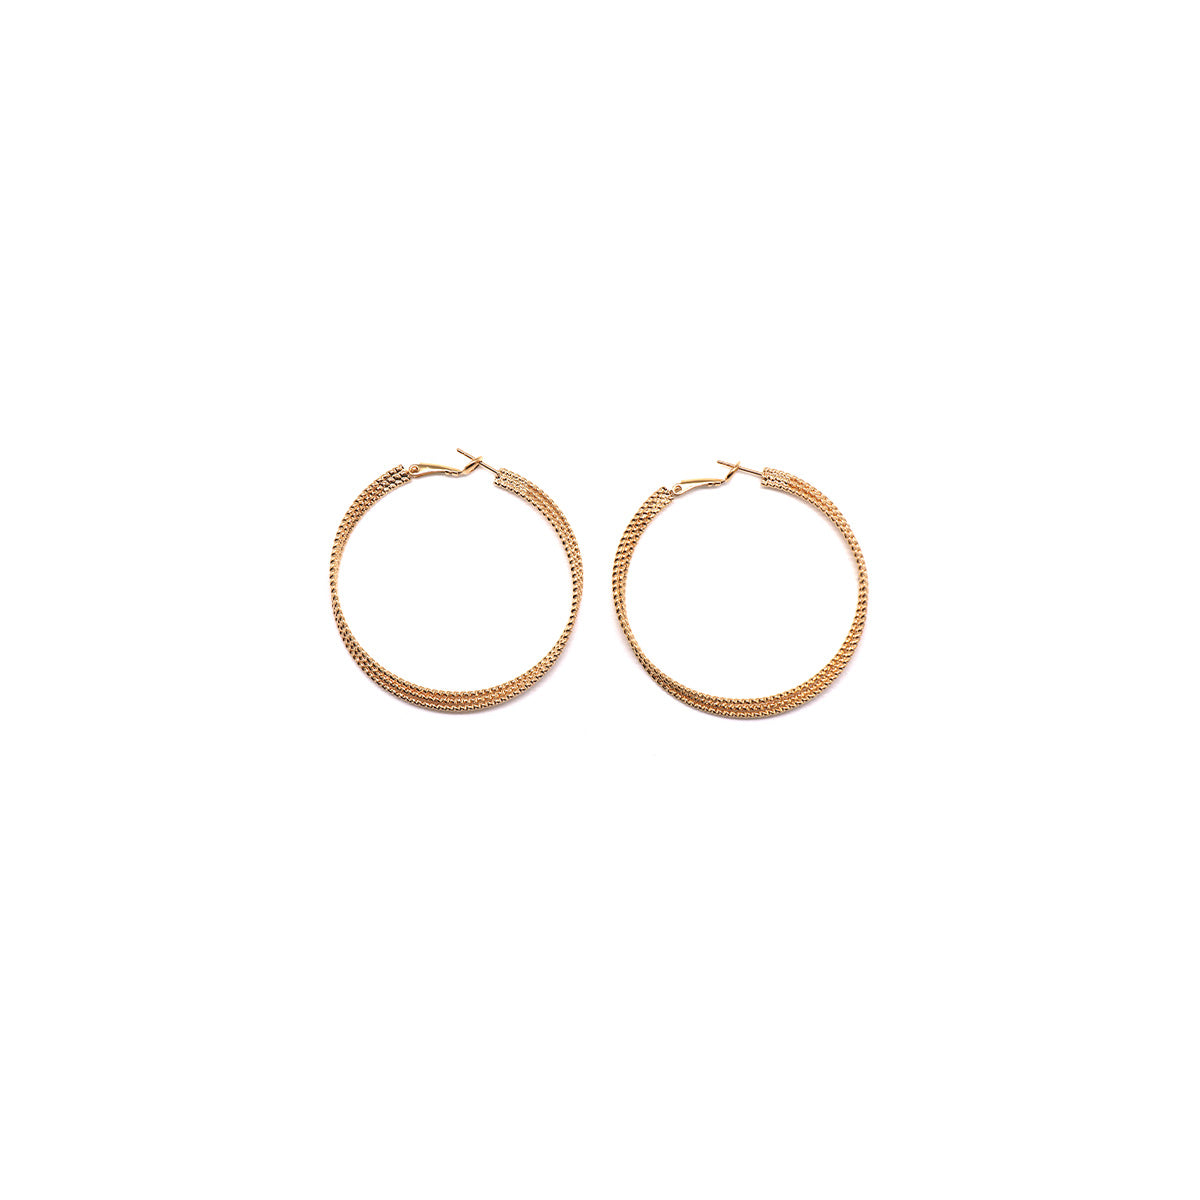 1.5" 2.5" gold hoop earrings textured